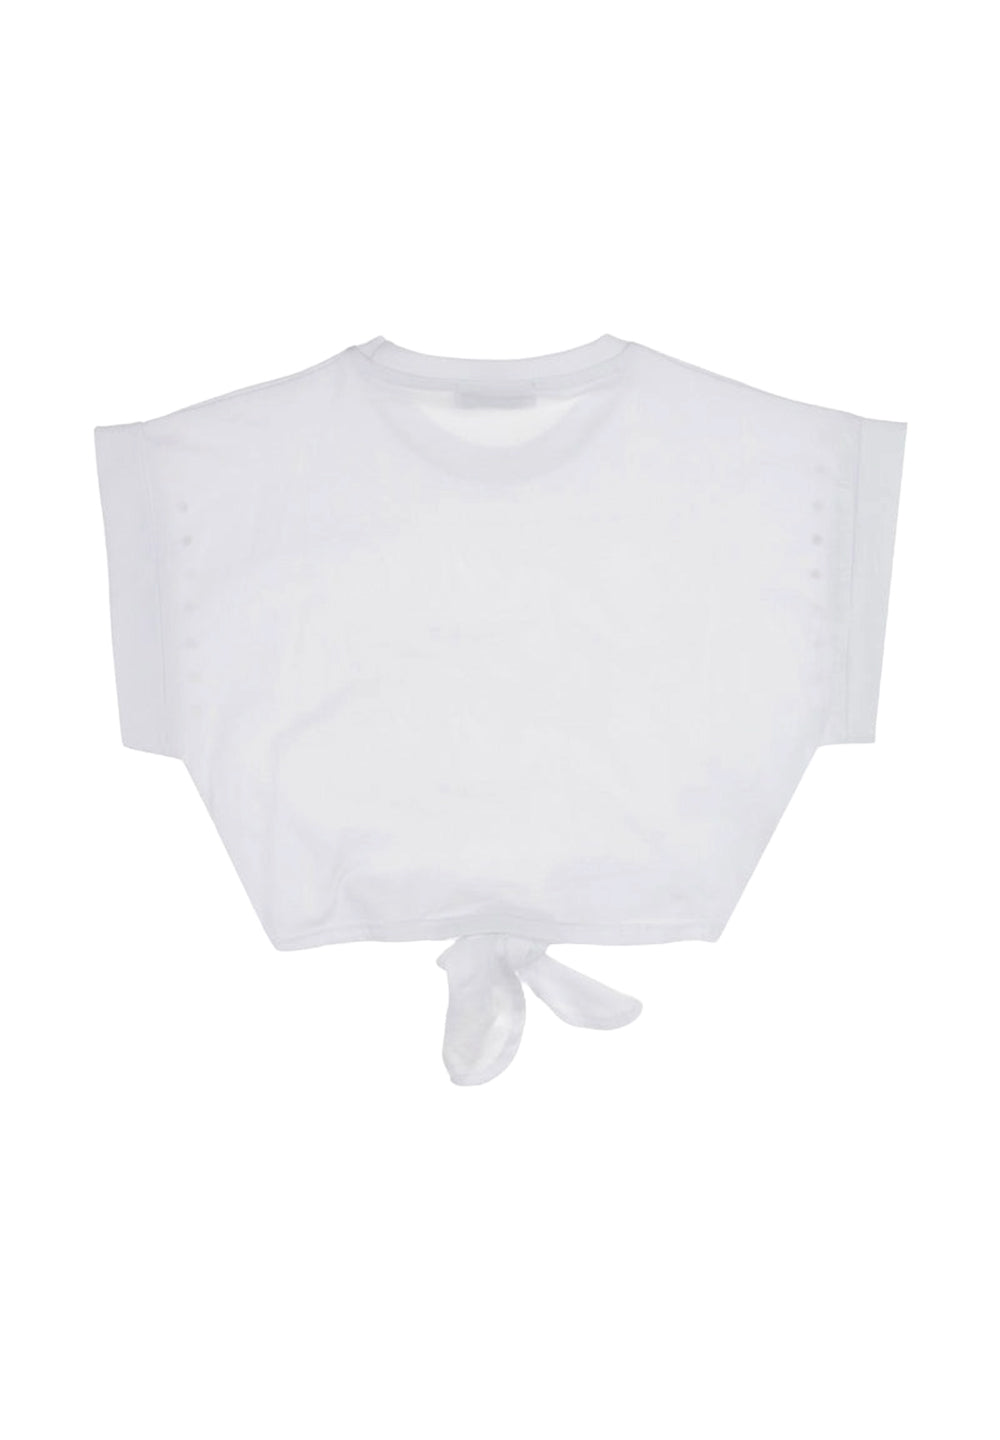 T-shirt bianca per bambina - Primamoda kids